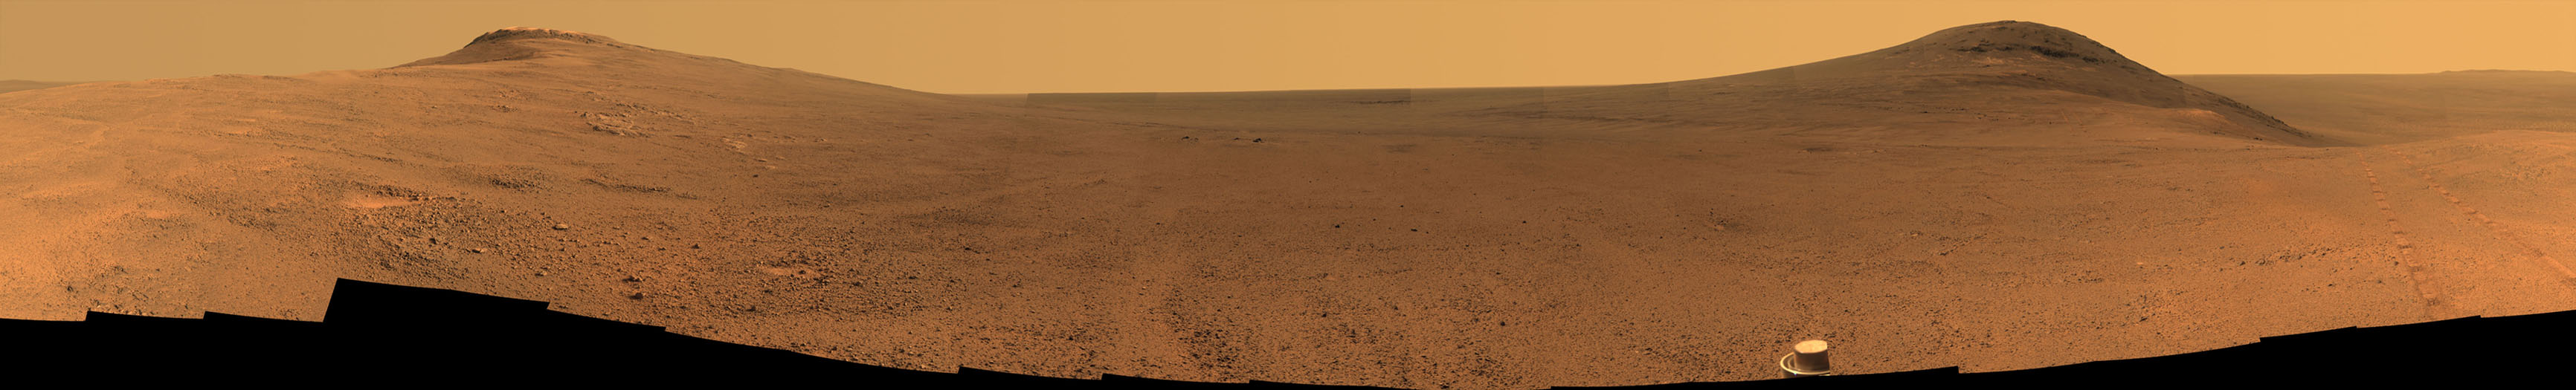 Июньская панорама Марса